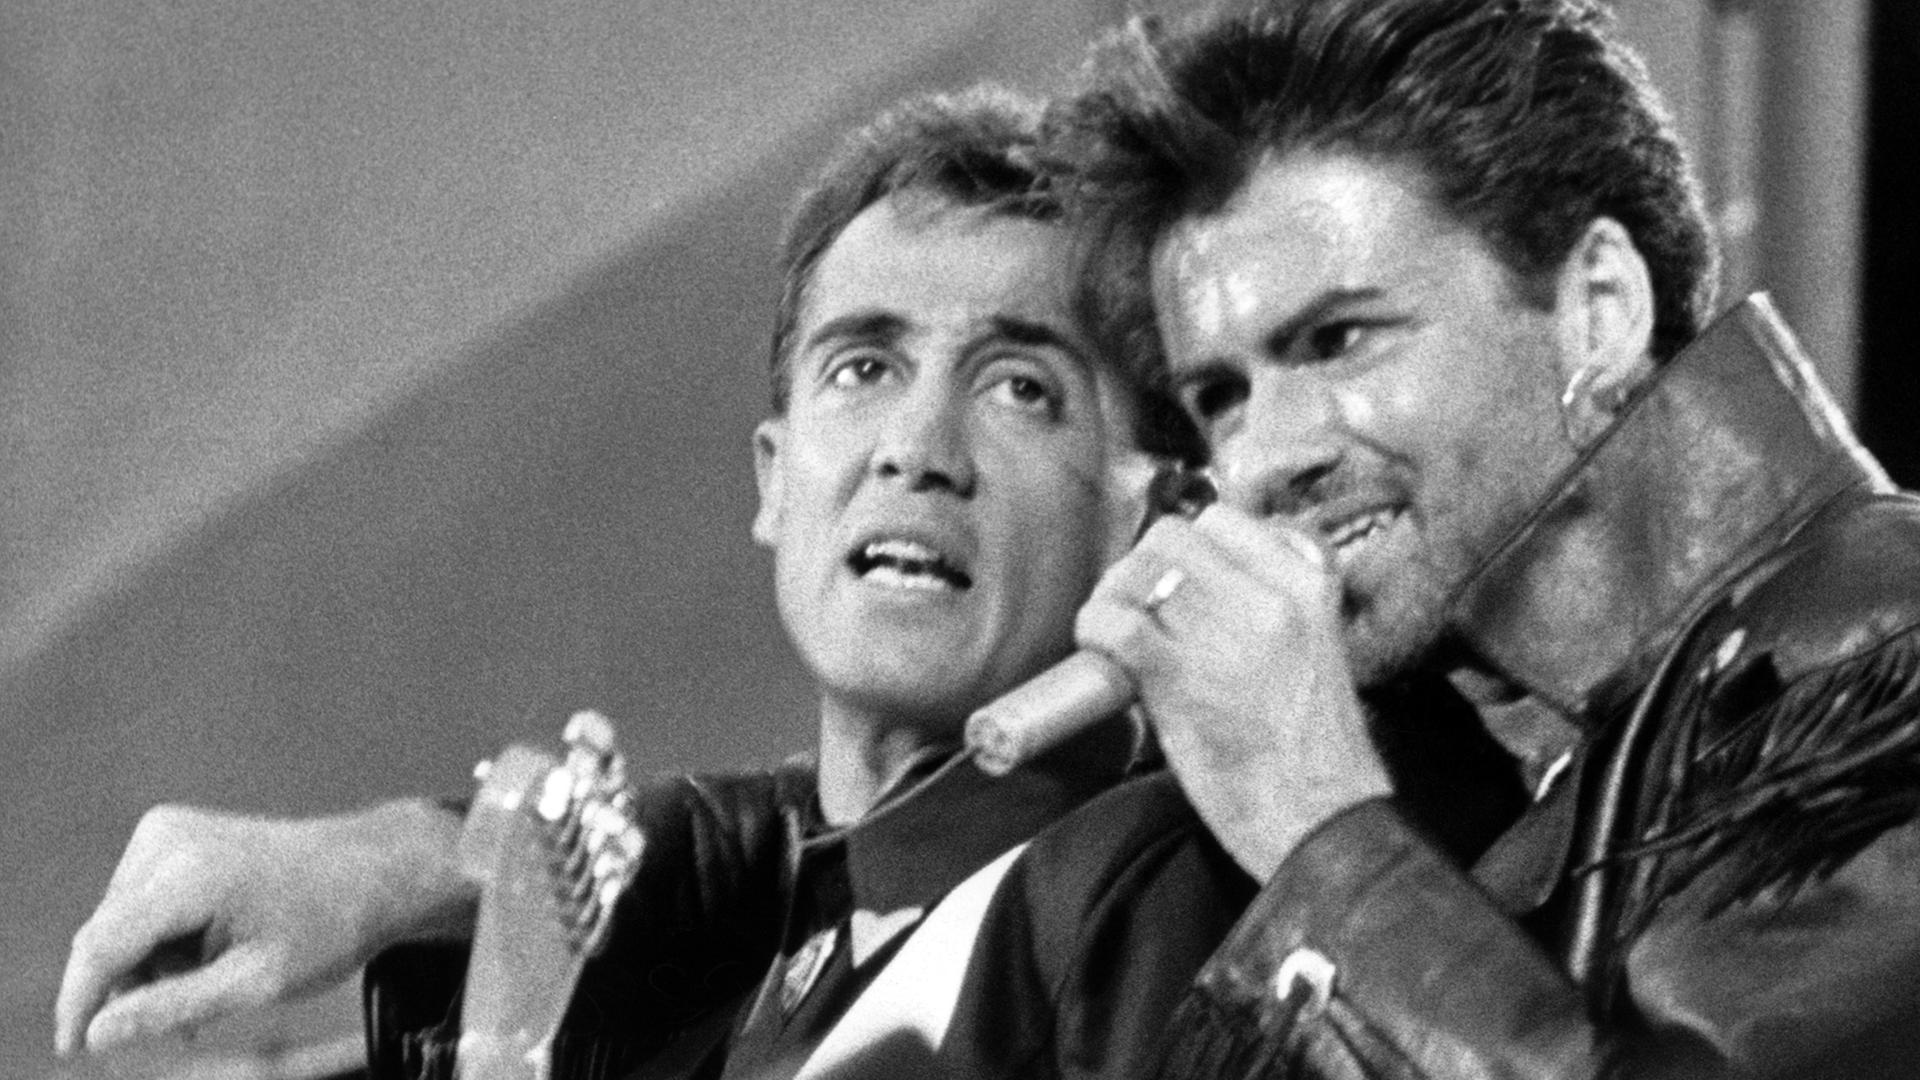 Das Pop-Duo Wham ("Last Christmas") mit Andrew Ridgeley (l) und George Michael (r) am 28.06.1986 während ihres Abschiedskonzerts im ausverkauften Wembley Stadion in London.